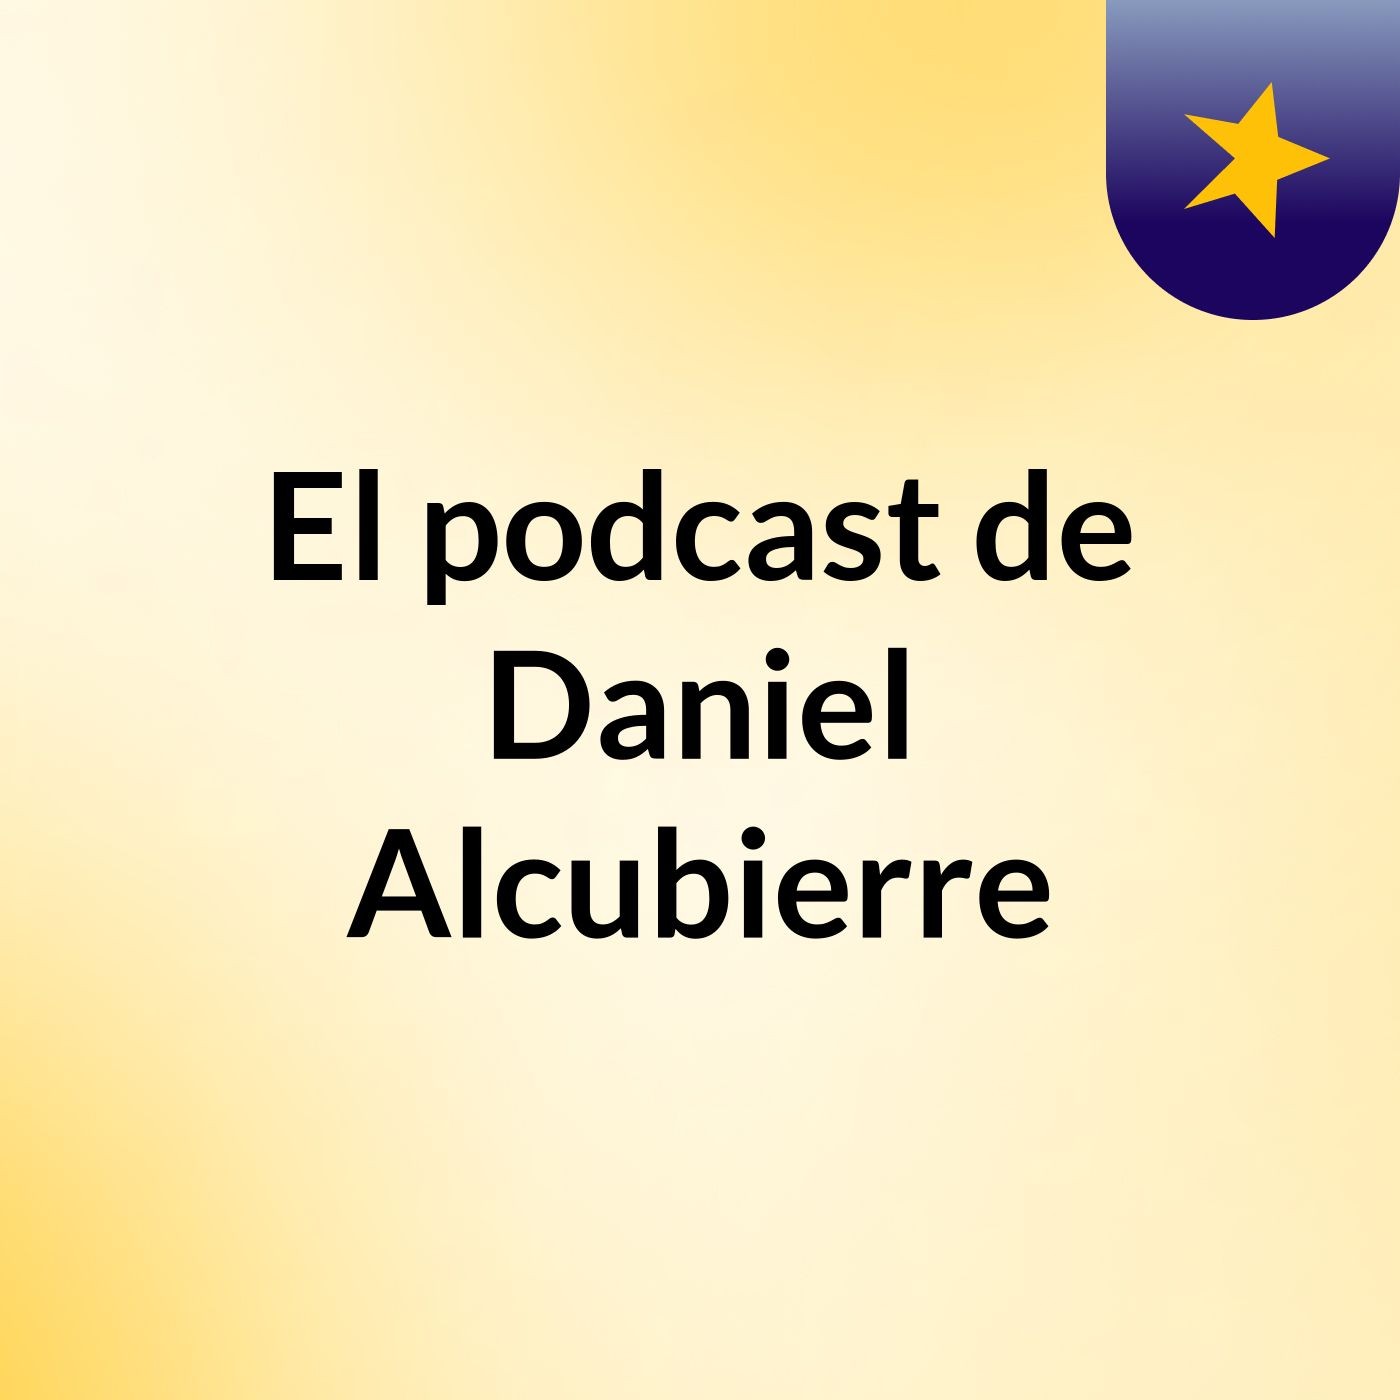 El podcast de Daniel Alcubierre